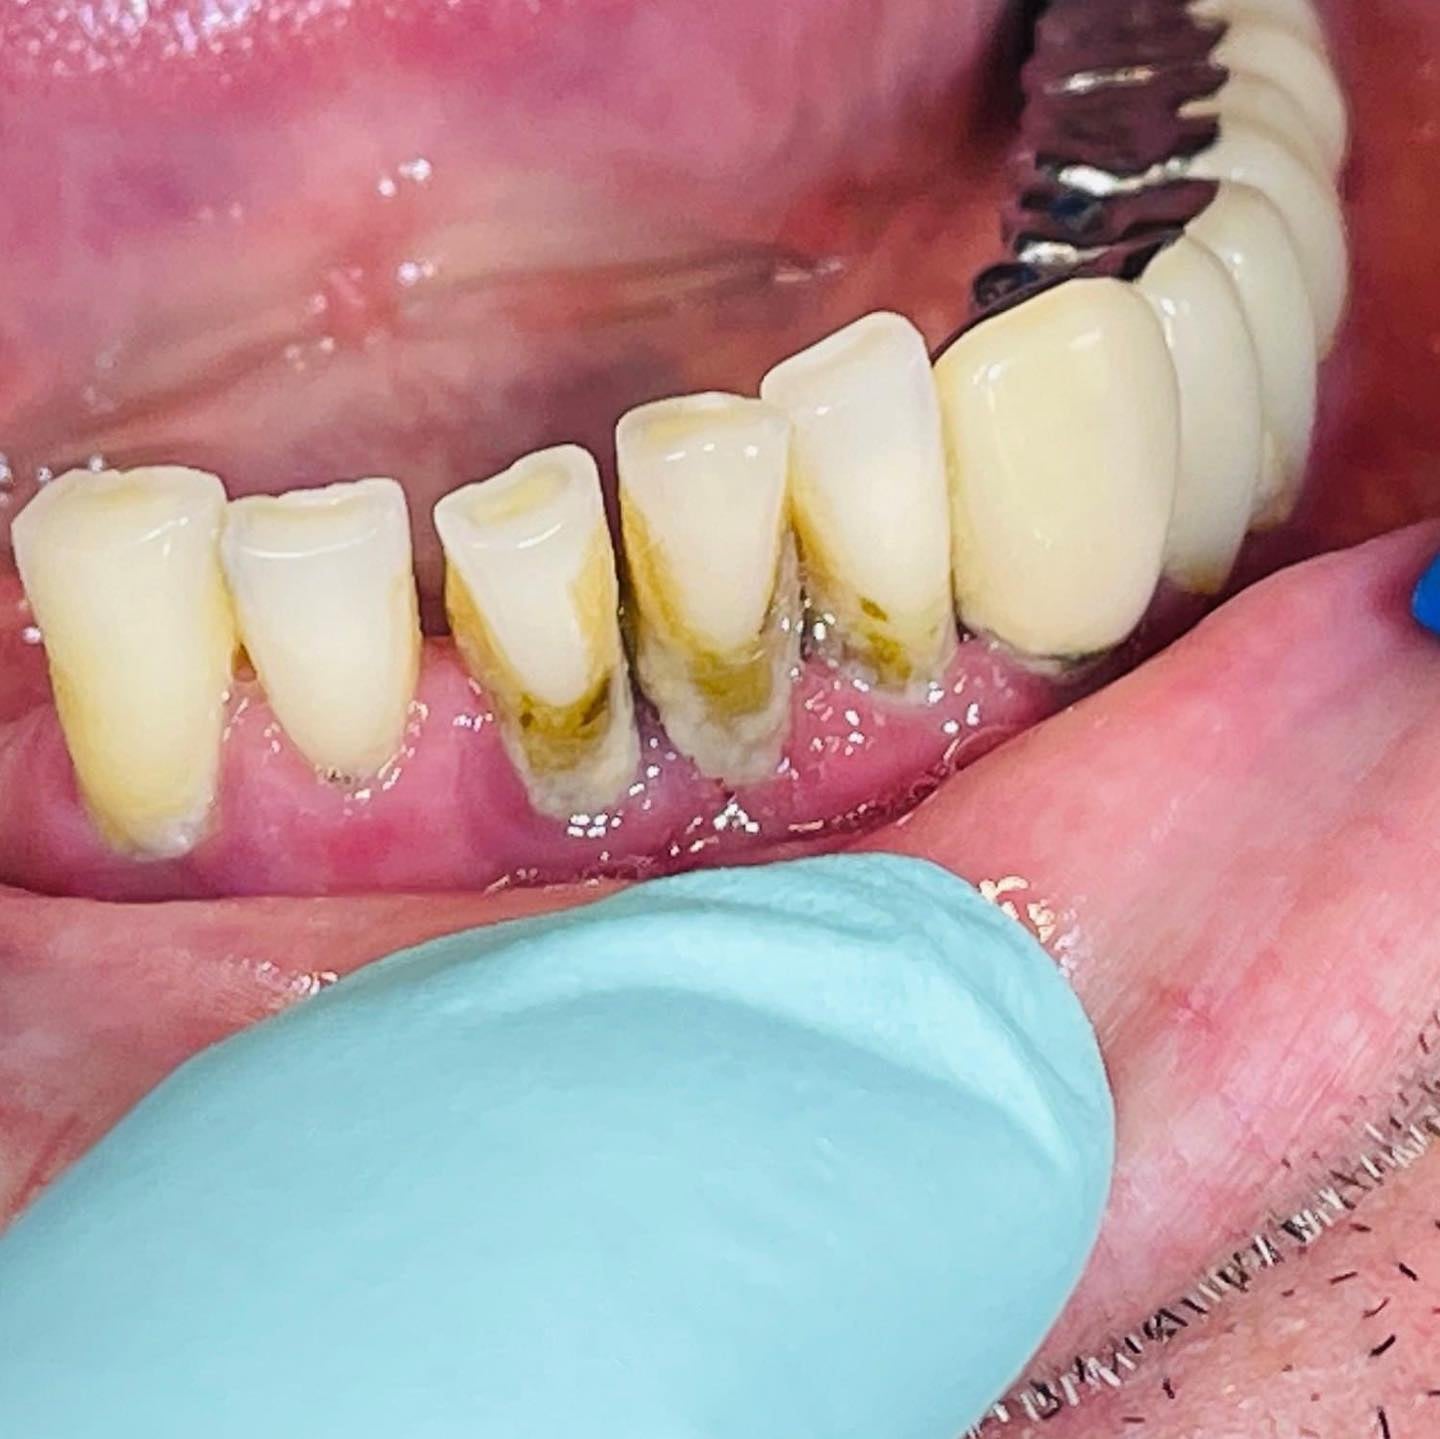 Tartrul dentar și igienizarea profesională